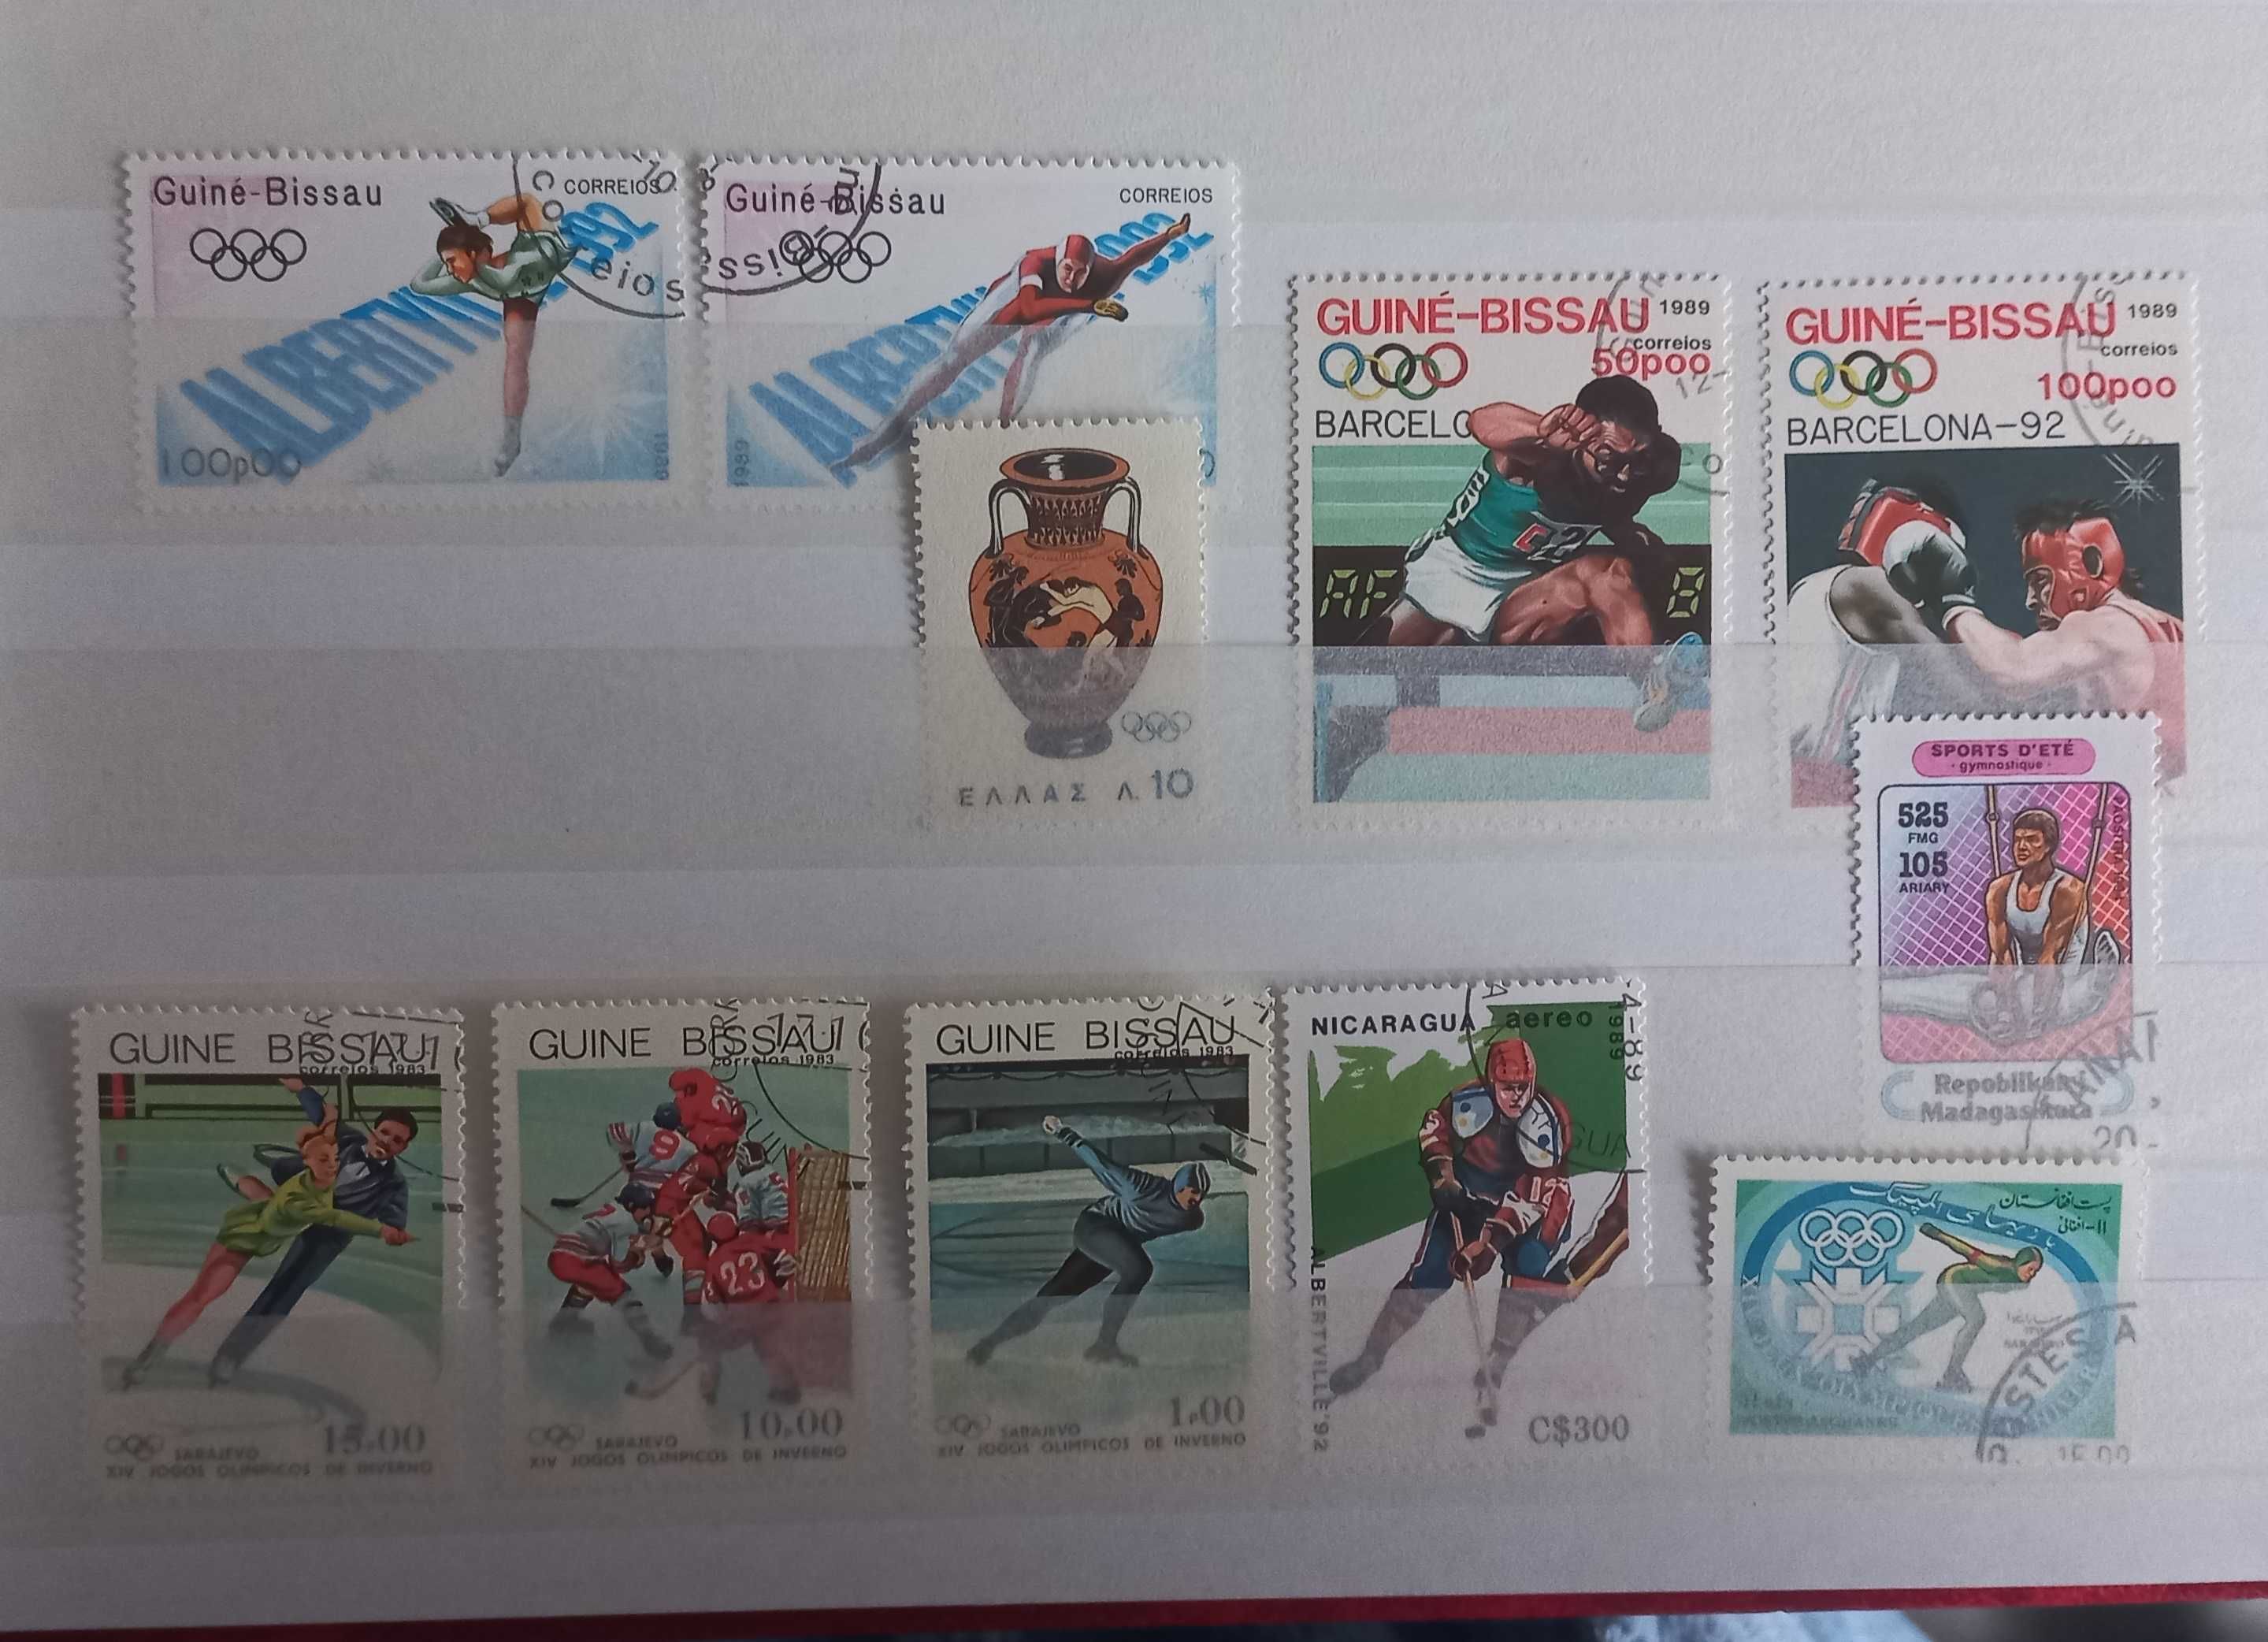 Znaczek pocztowy - Olimpiada - SPORT